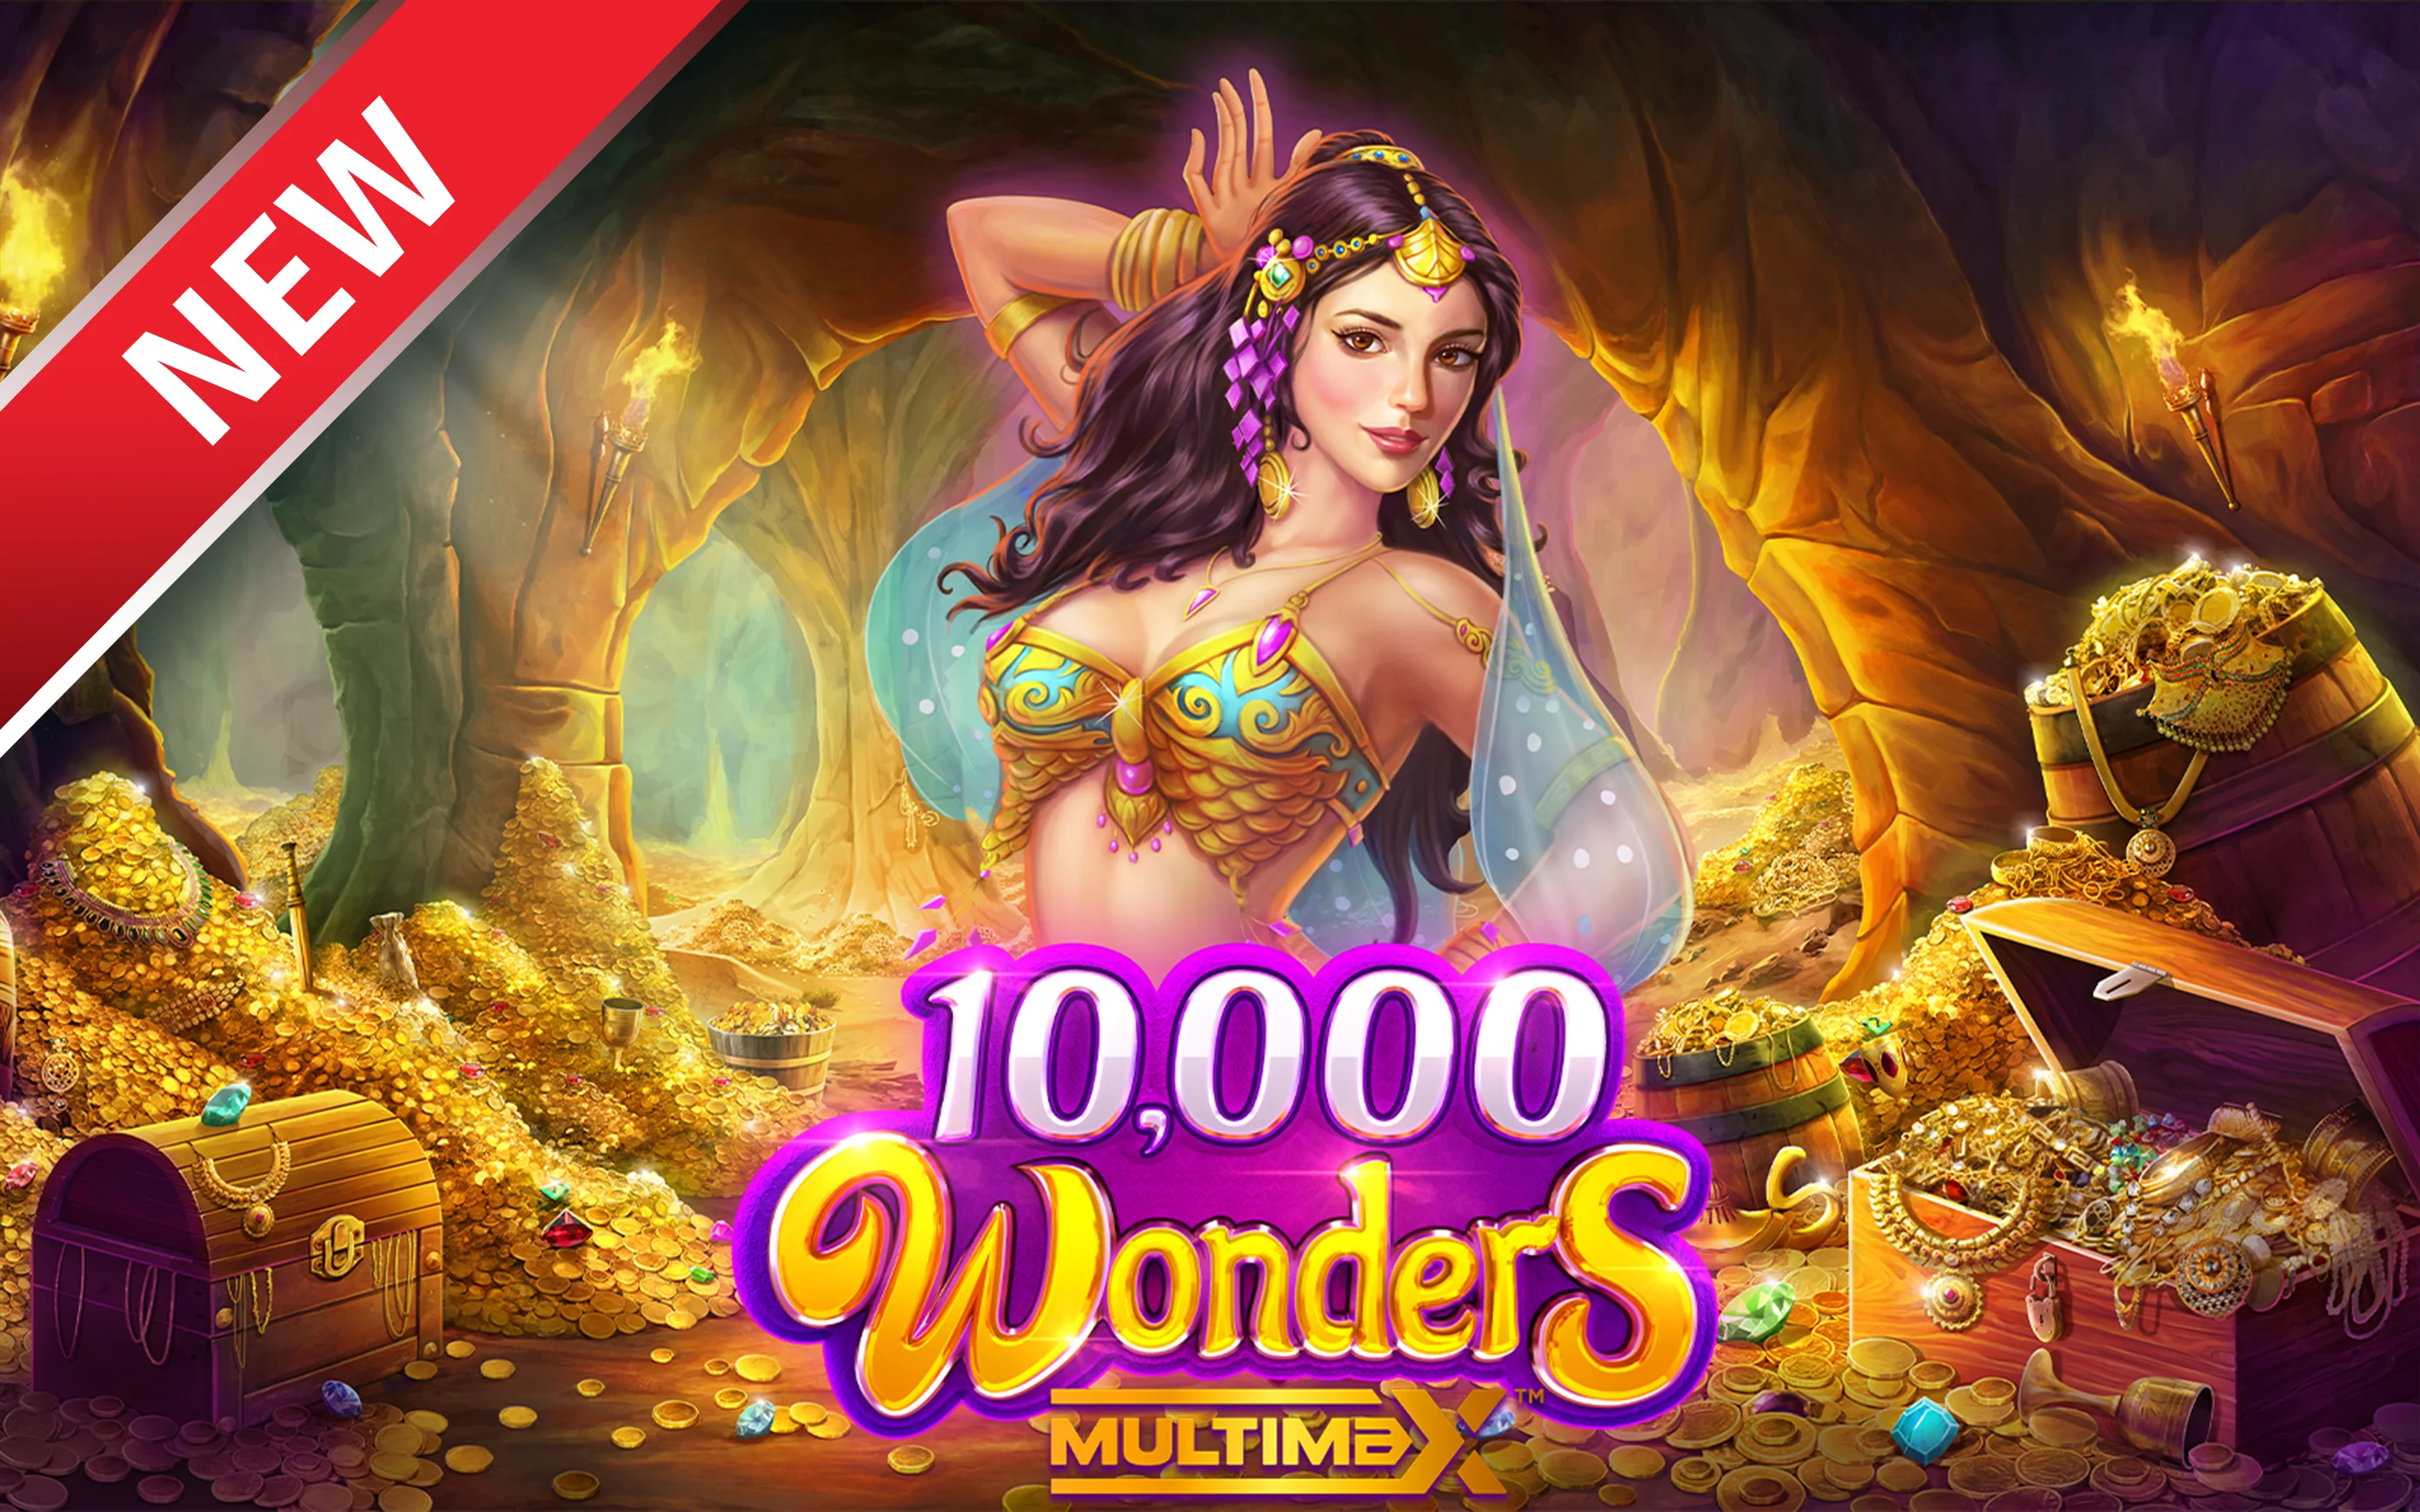 Play 10,000 Wonders MultiMax™ on Starcasino.be online casino